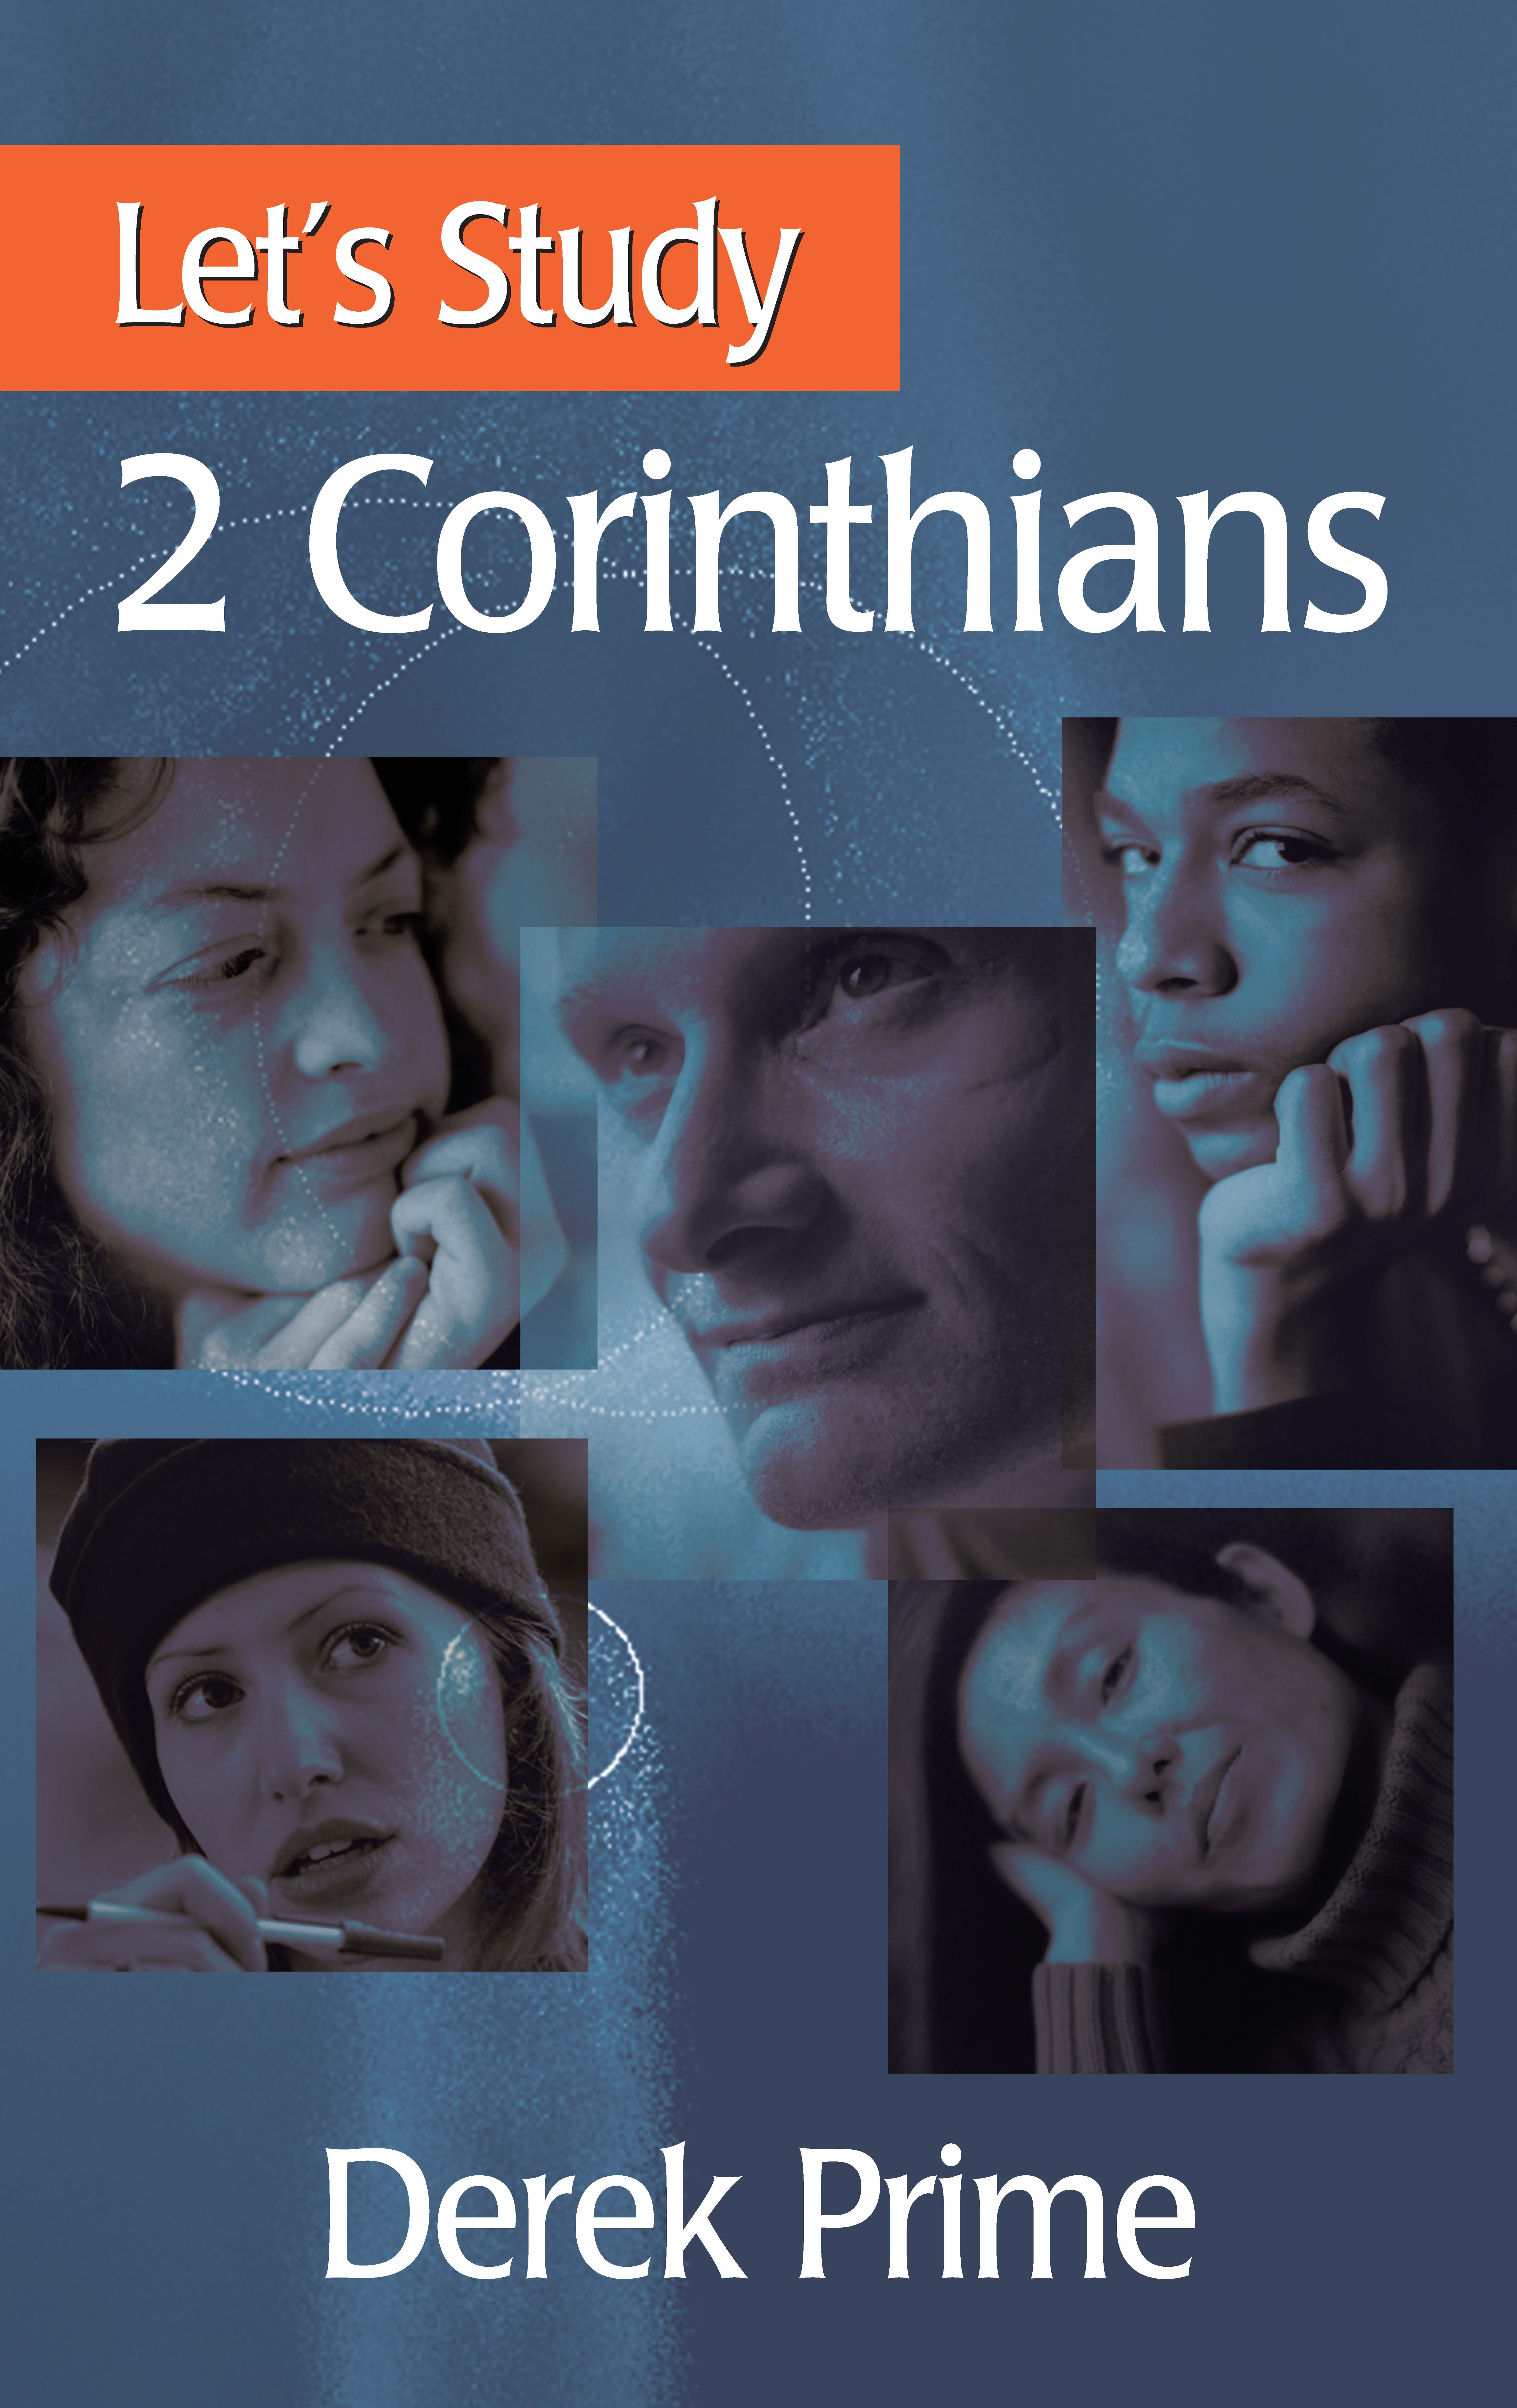 Let's Study 2 Corinthians